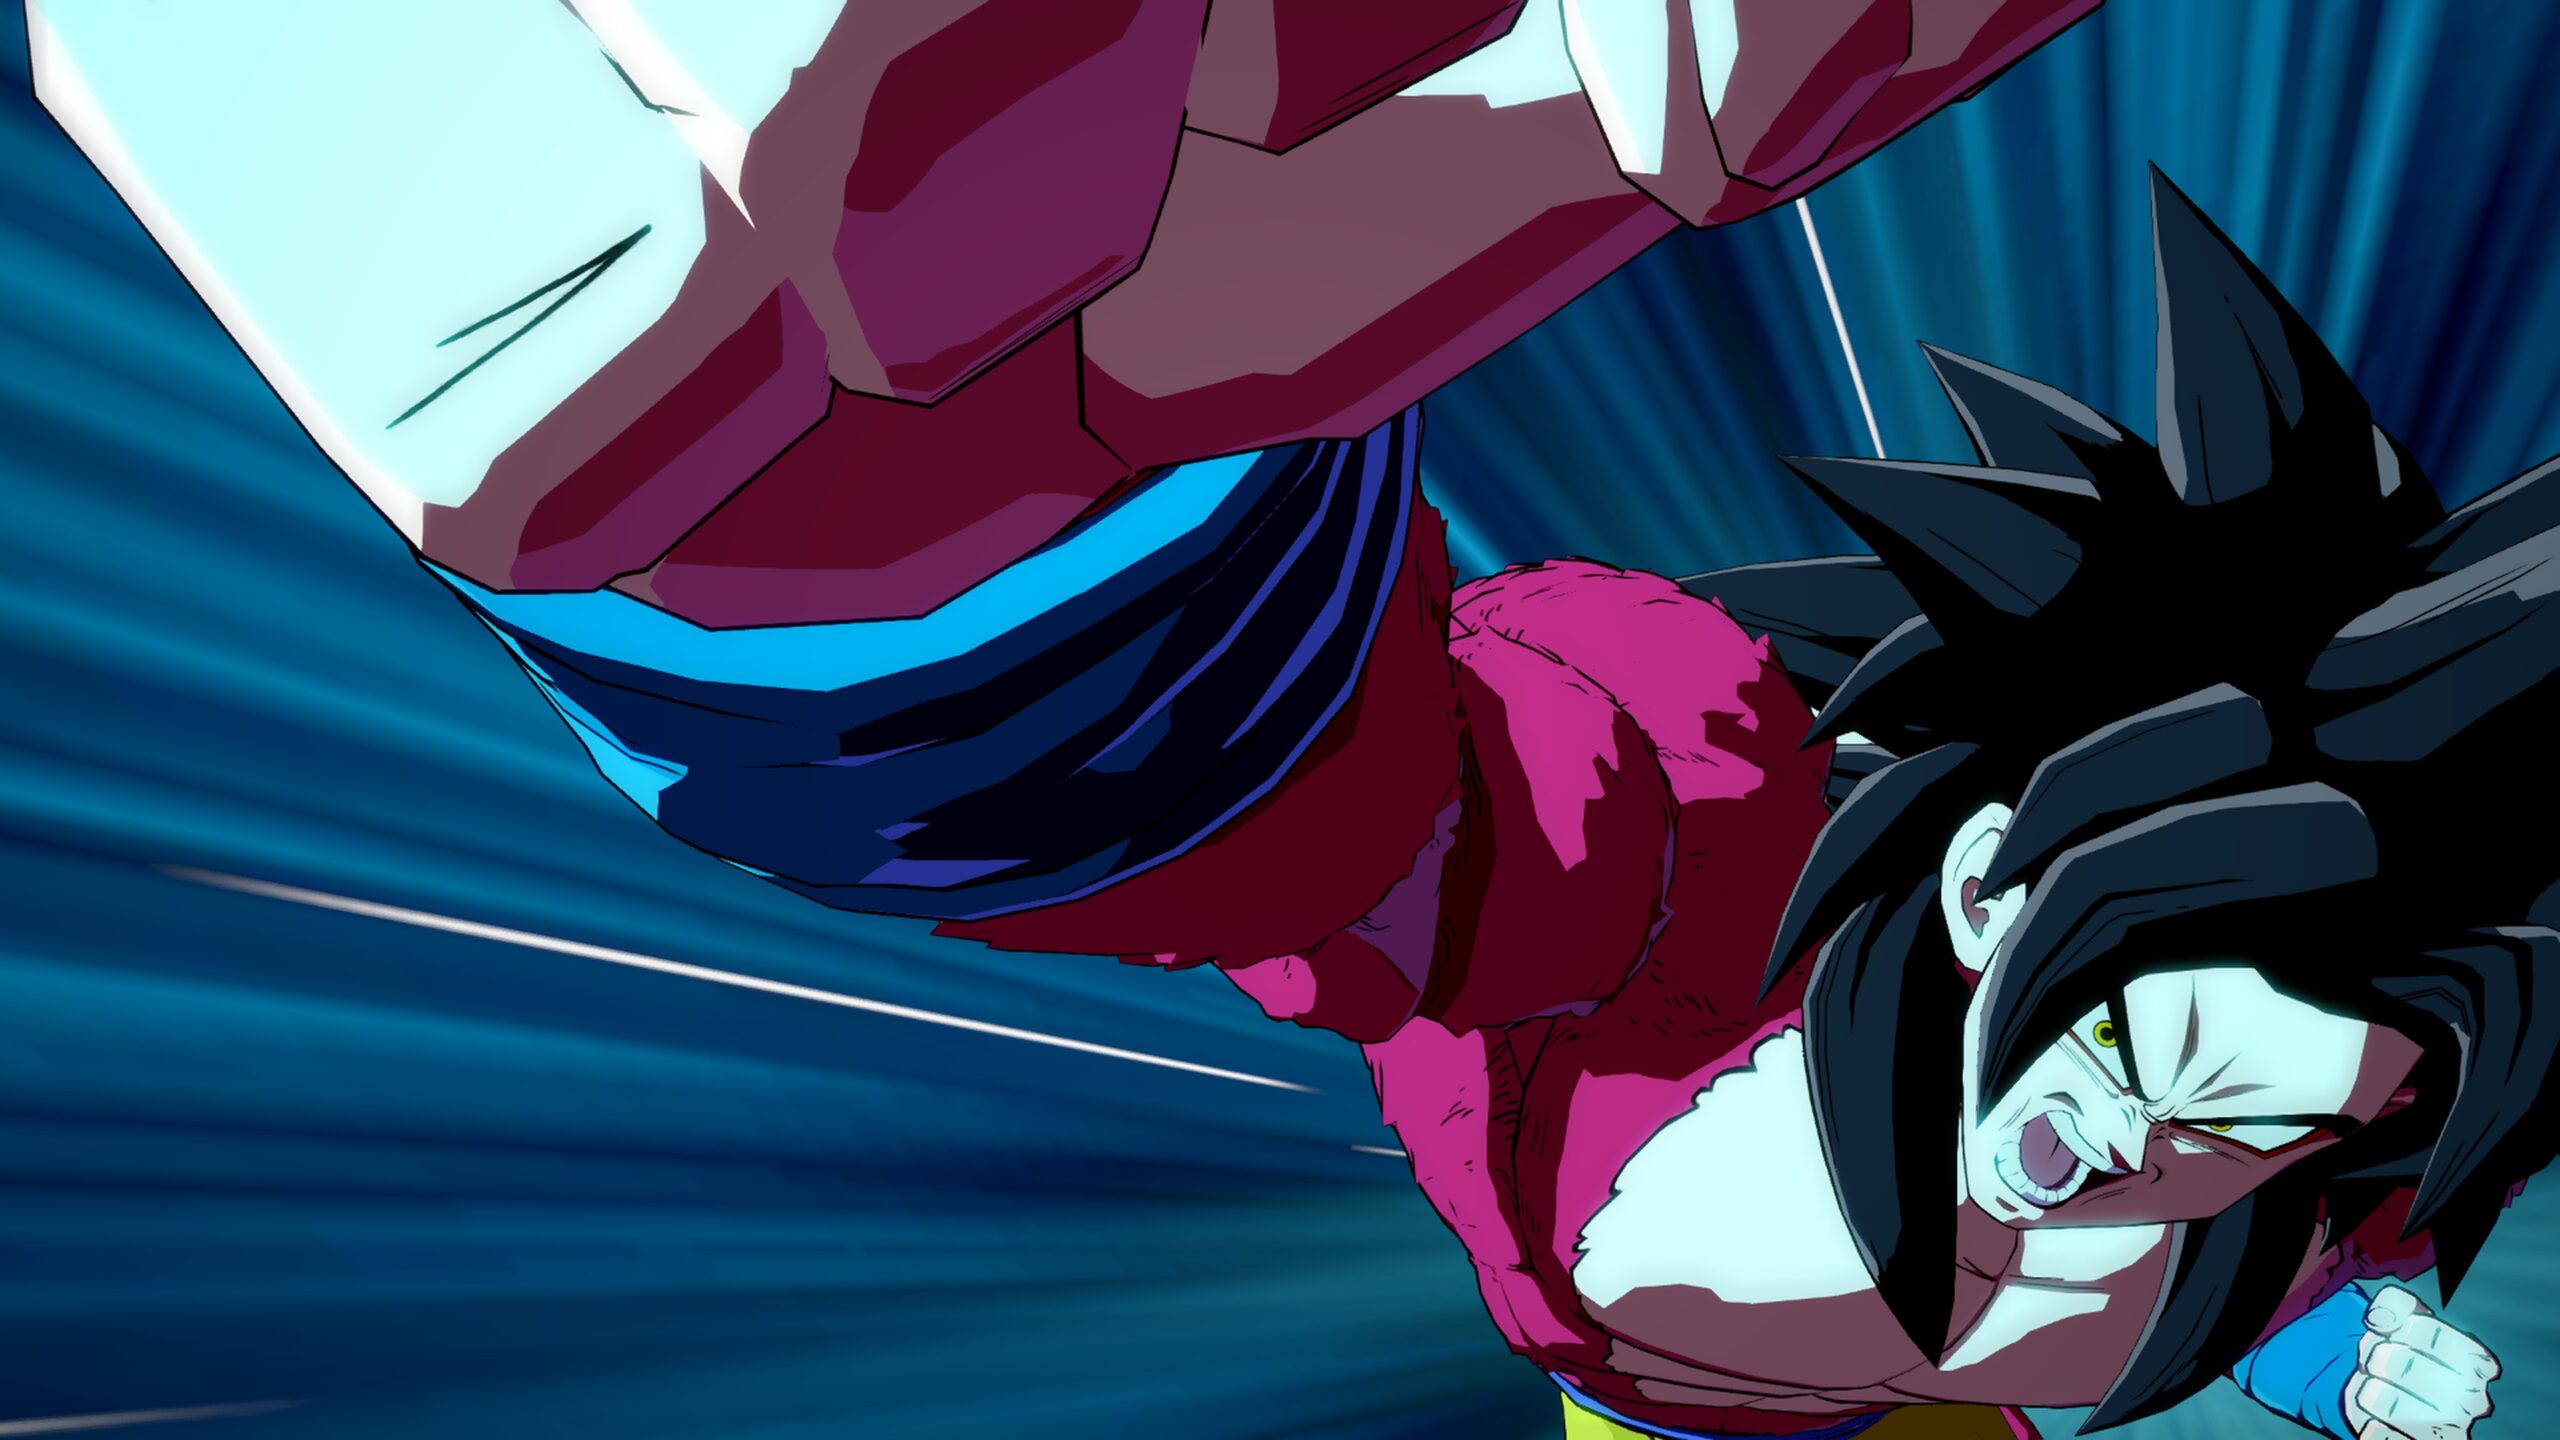 Baby Goku ALL FORMS - Dragon Ball GT Xenoverse 2 